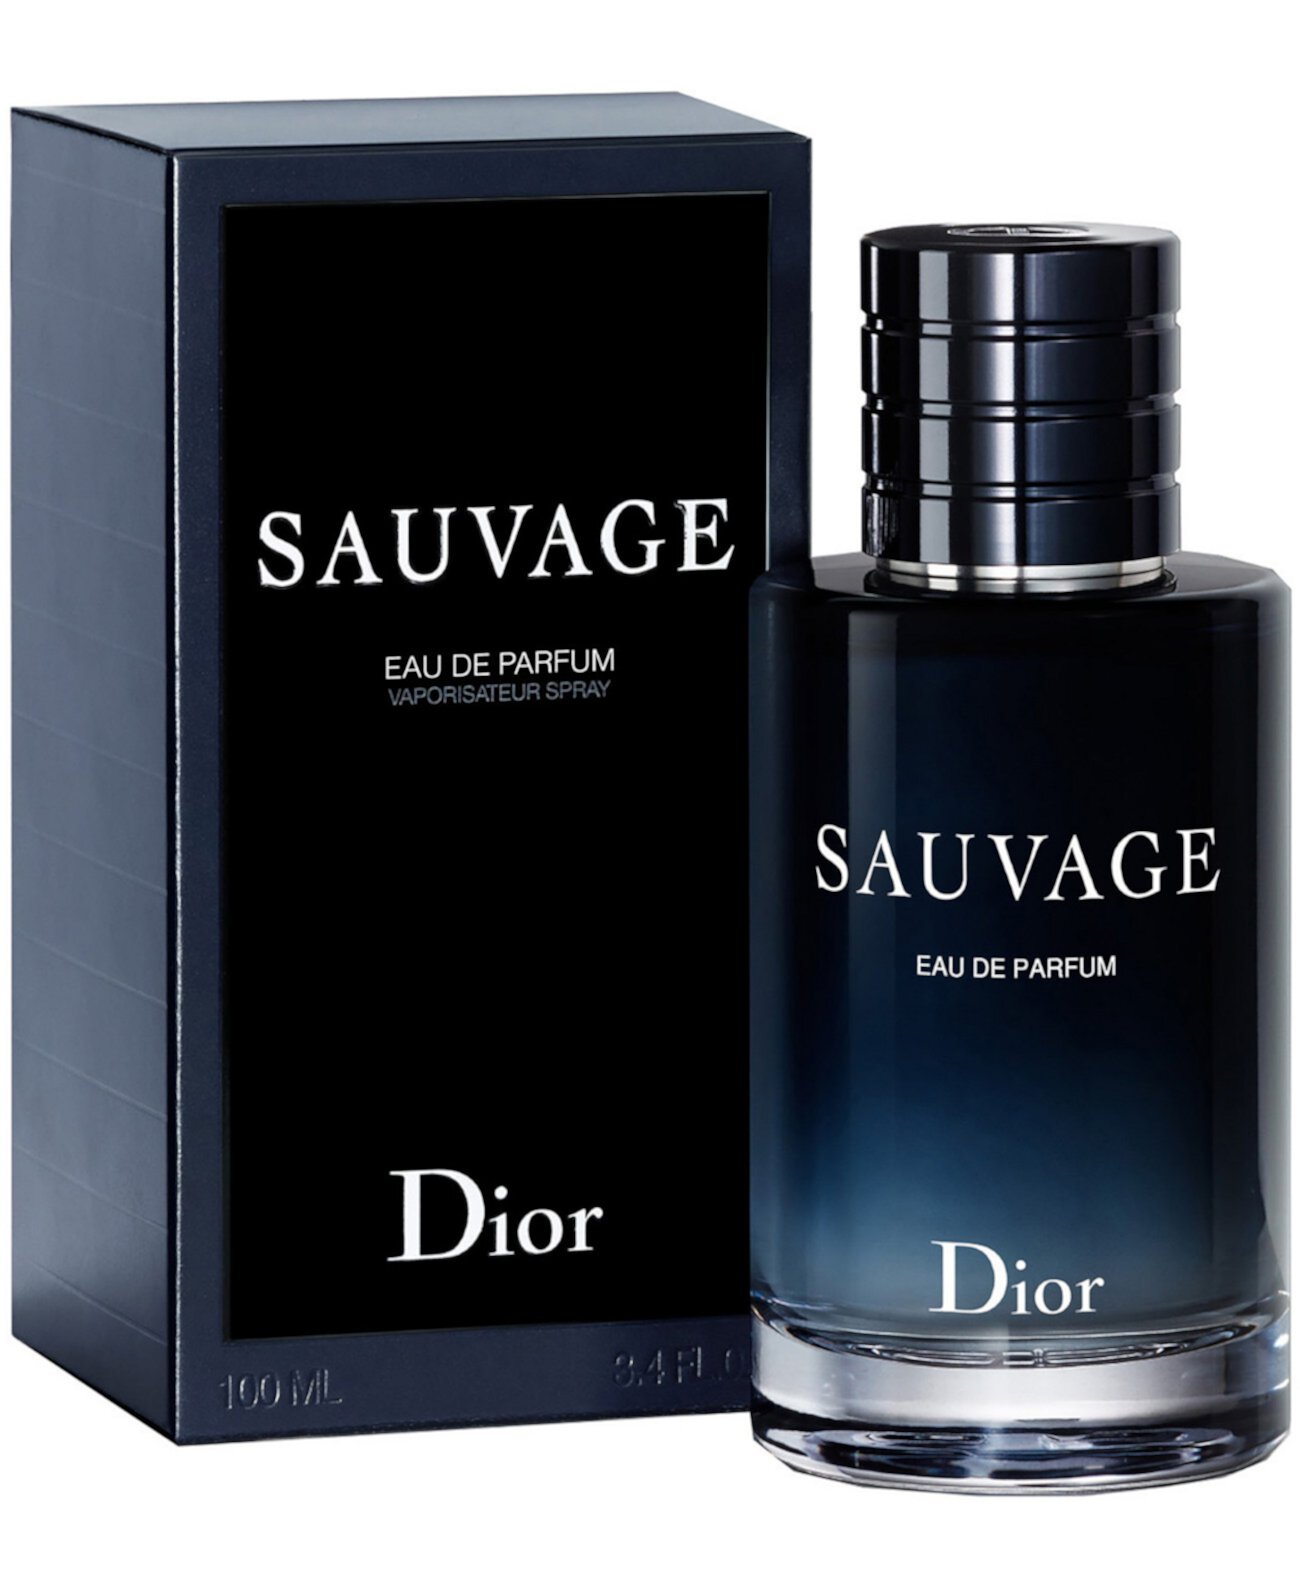 Мужской спрей Sauvage Eau de Parfum, 3,4 унции. Dior